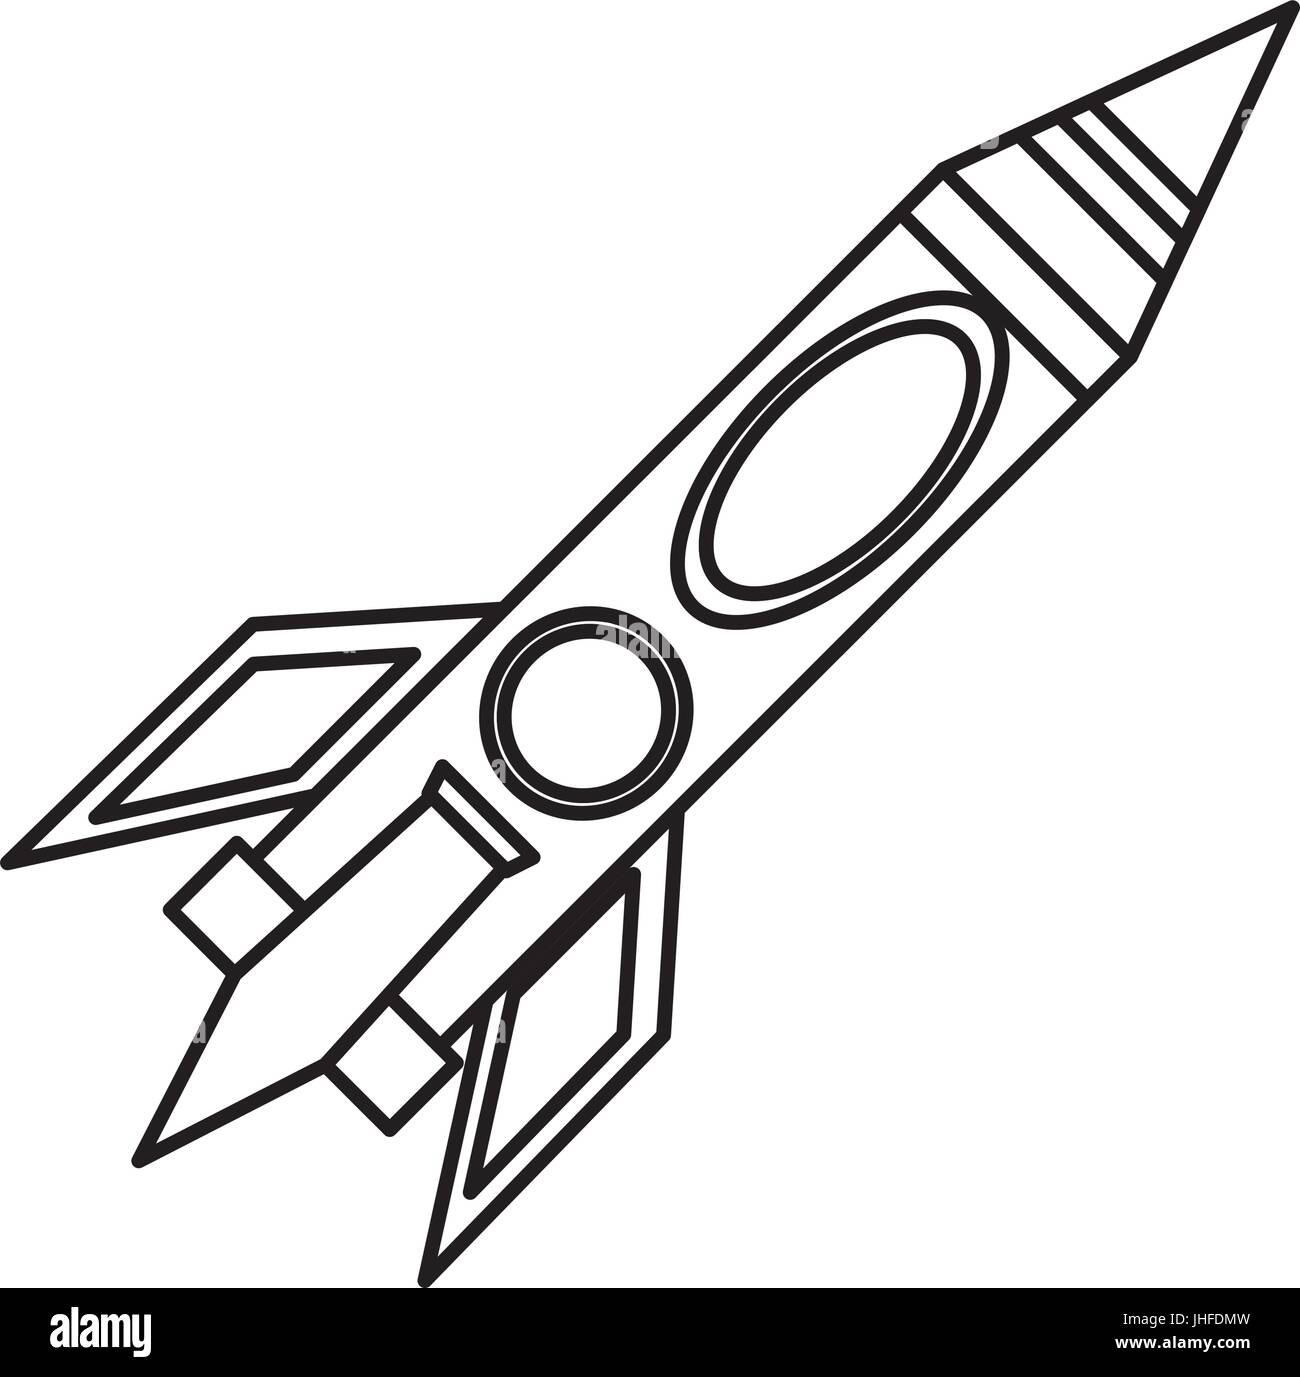 Ракета для срисовки. Ракета рисунок. Ракета рисунок для детей. Ракета рисунок карандашом. Детские рисунки ракеты.